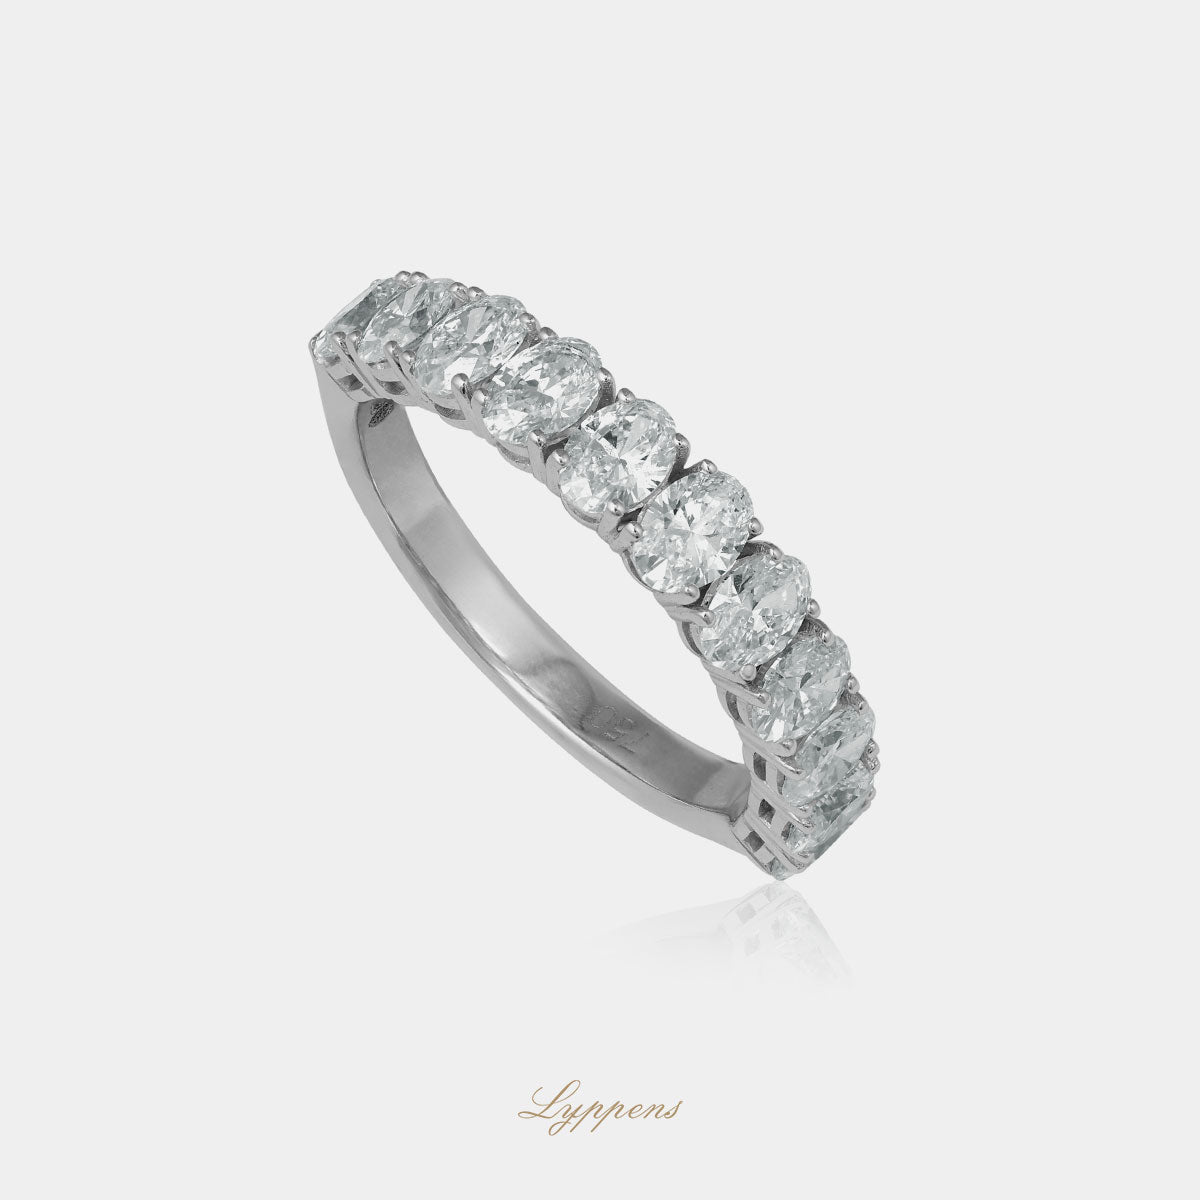 Staande witgouden rijring met ovaal geslepen diamant, deze ring kan ook als trouwring gedragen worden.